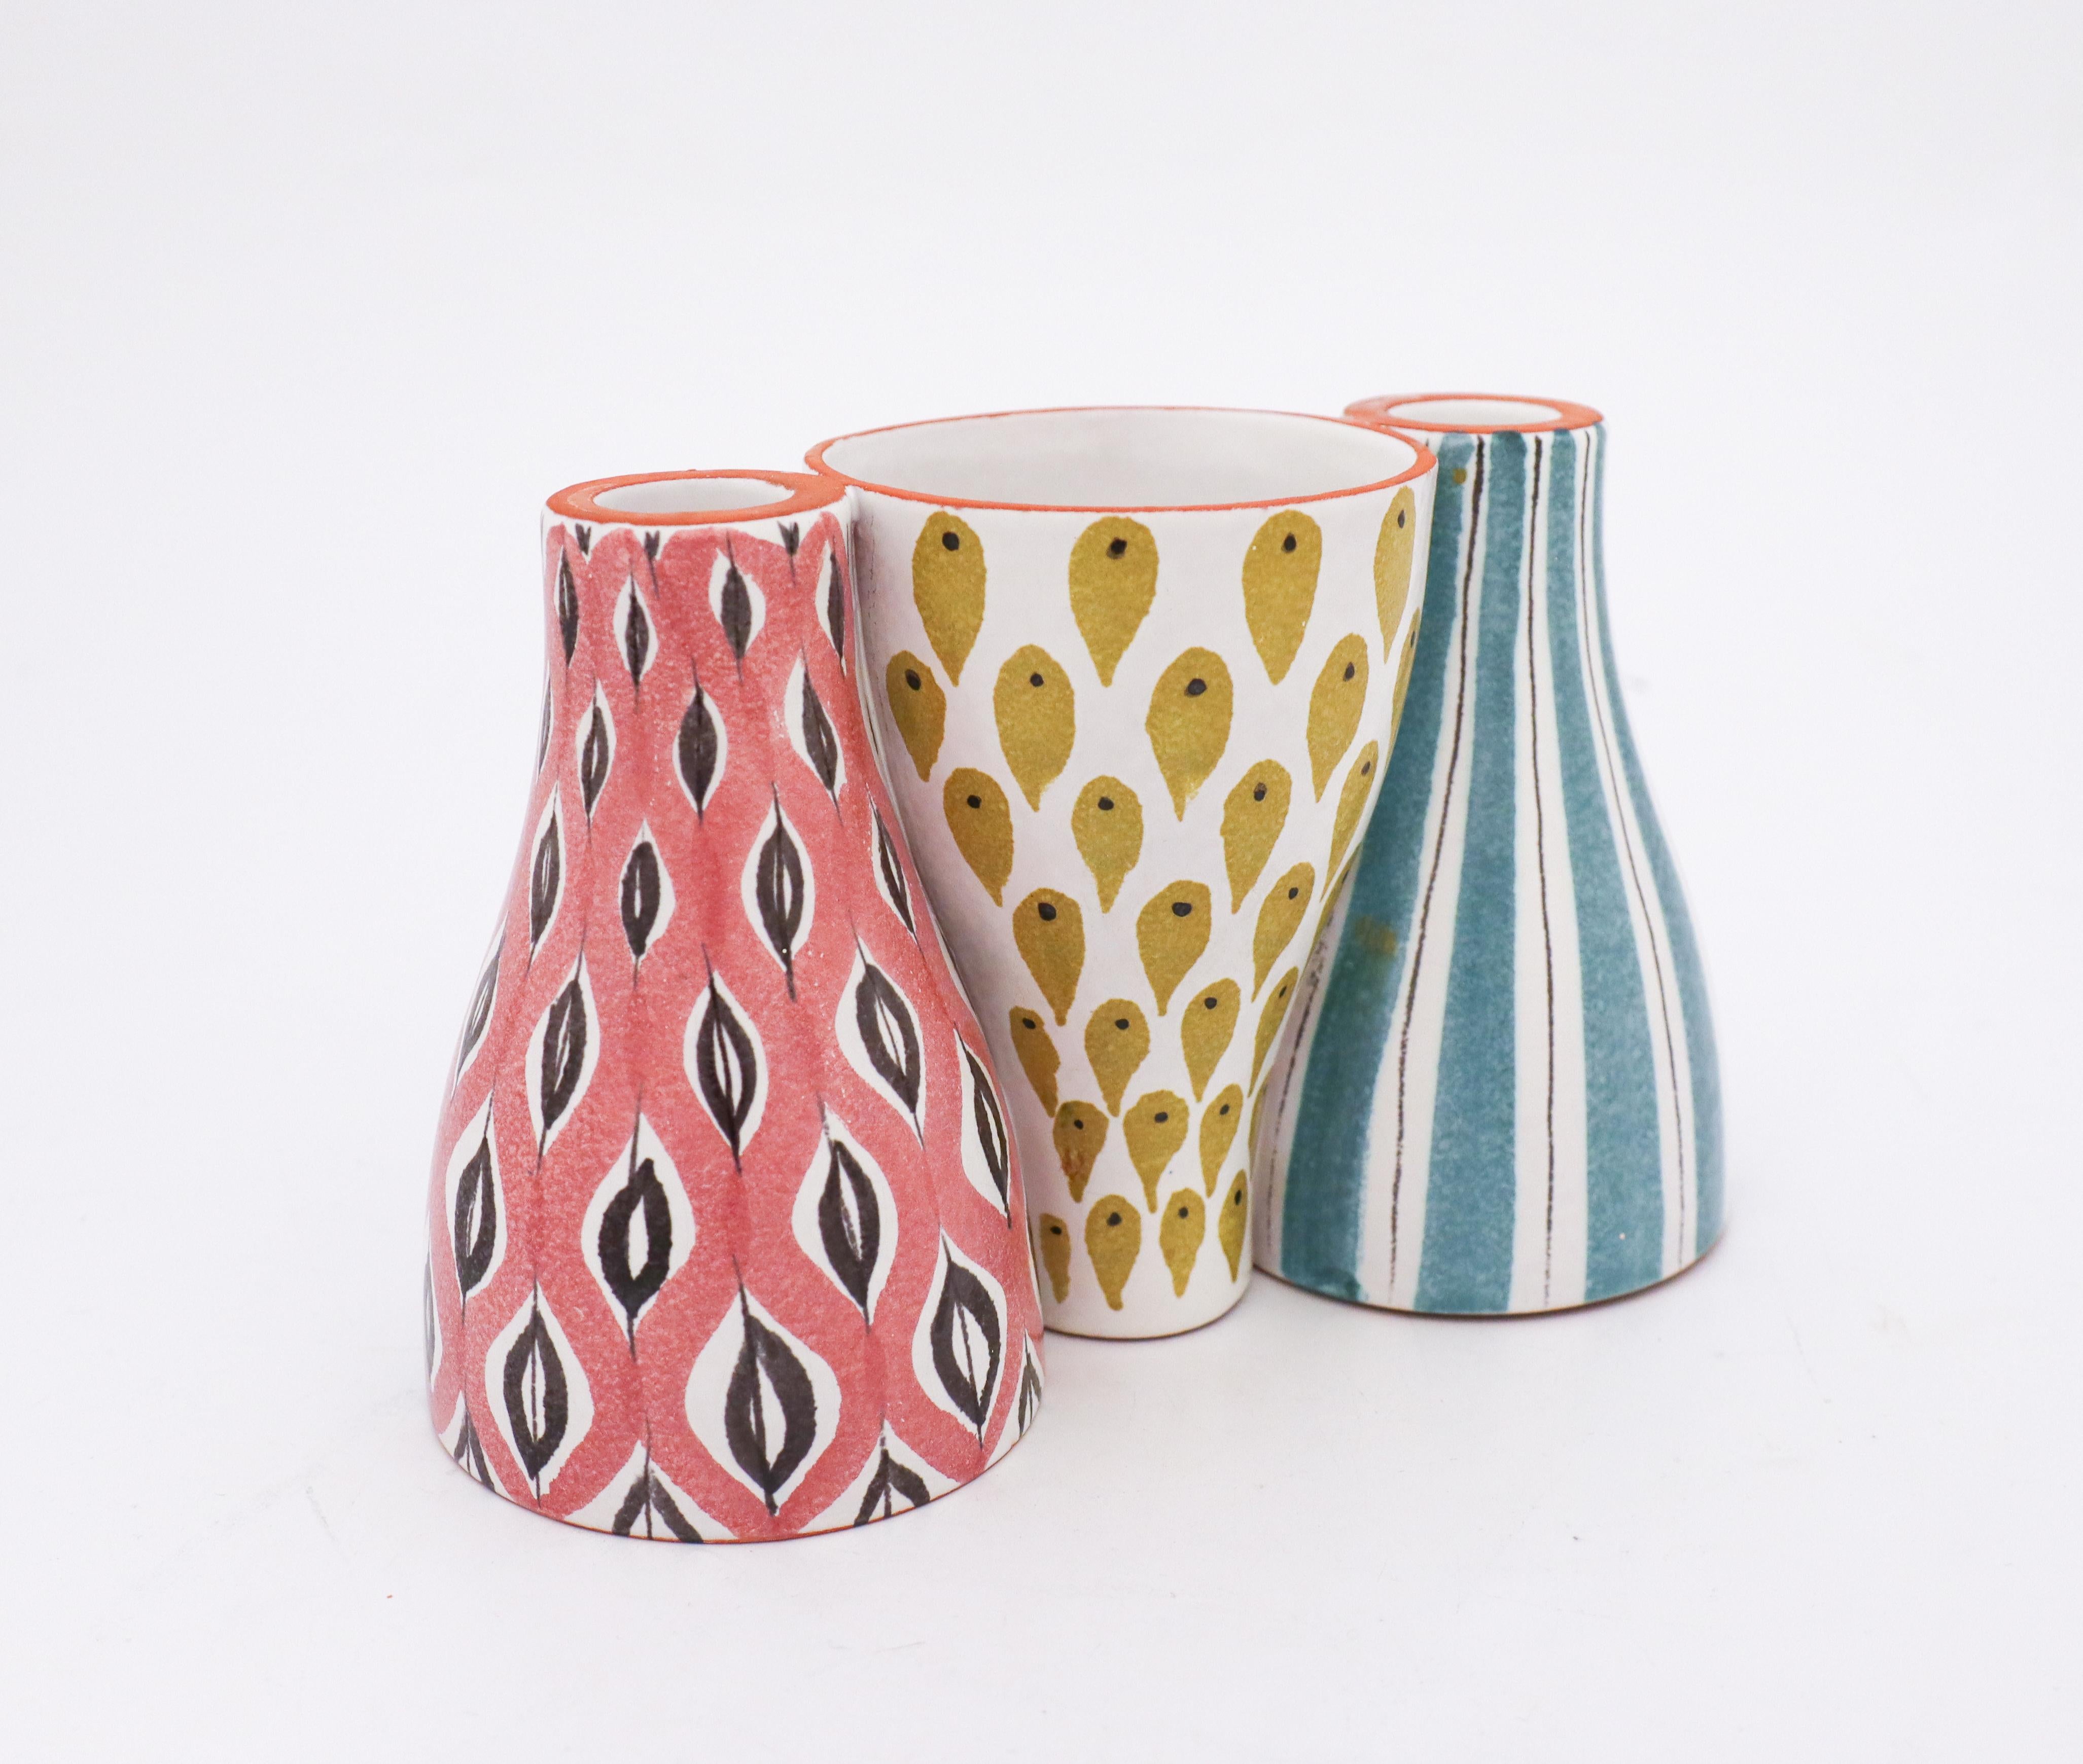 Eine schöne Kombination aus Vase und Kerzenständer des Modells „Snurran“, entworfen von Stig Lindberg im Gustavsberg Studio. Er wurde so konzipiert, dass er sowohl als Vase als auch als Kerzenständer verwendet werden kann, und man kann ihn auch von